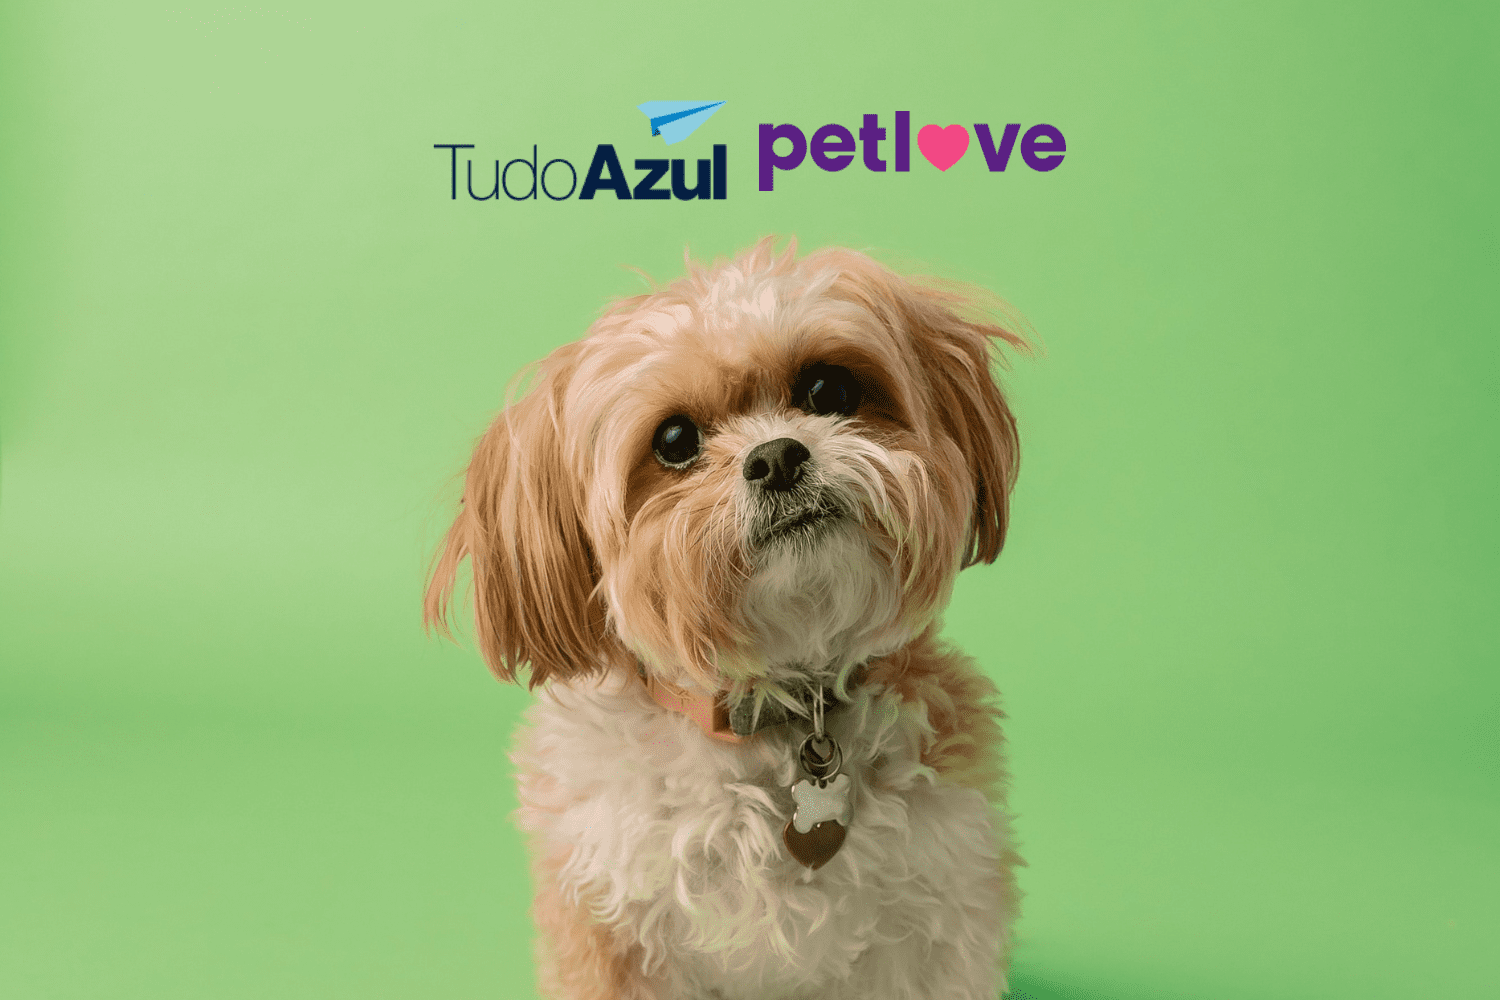 cachorro fofo com logo TudoAzul e Petlove 12 pontos TudoAzul